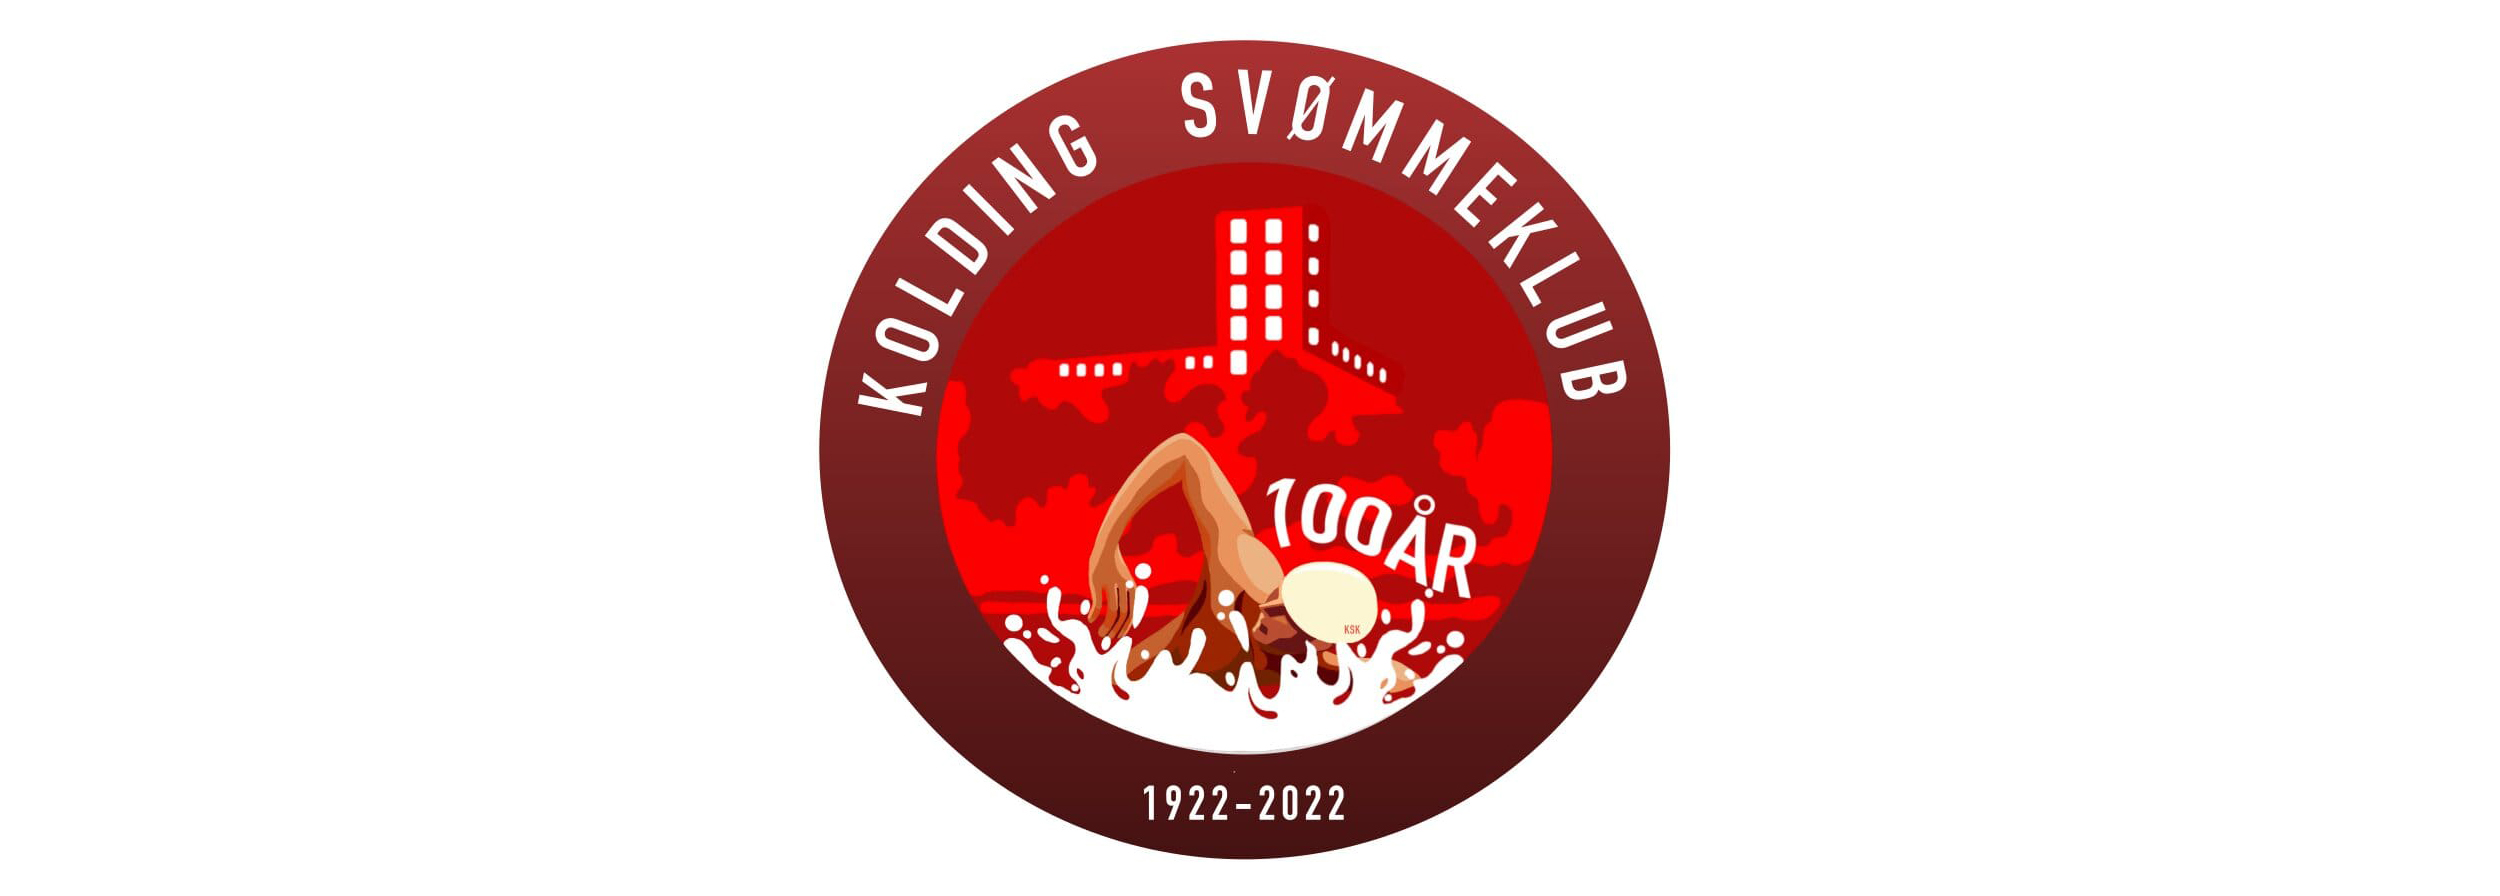 KSK logo 100 år_bred.jpg